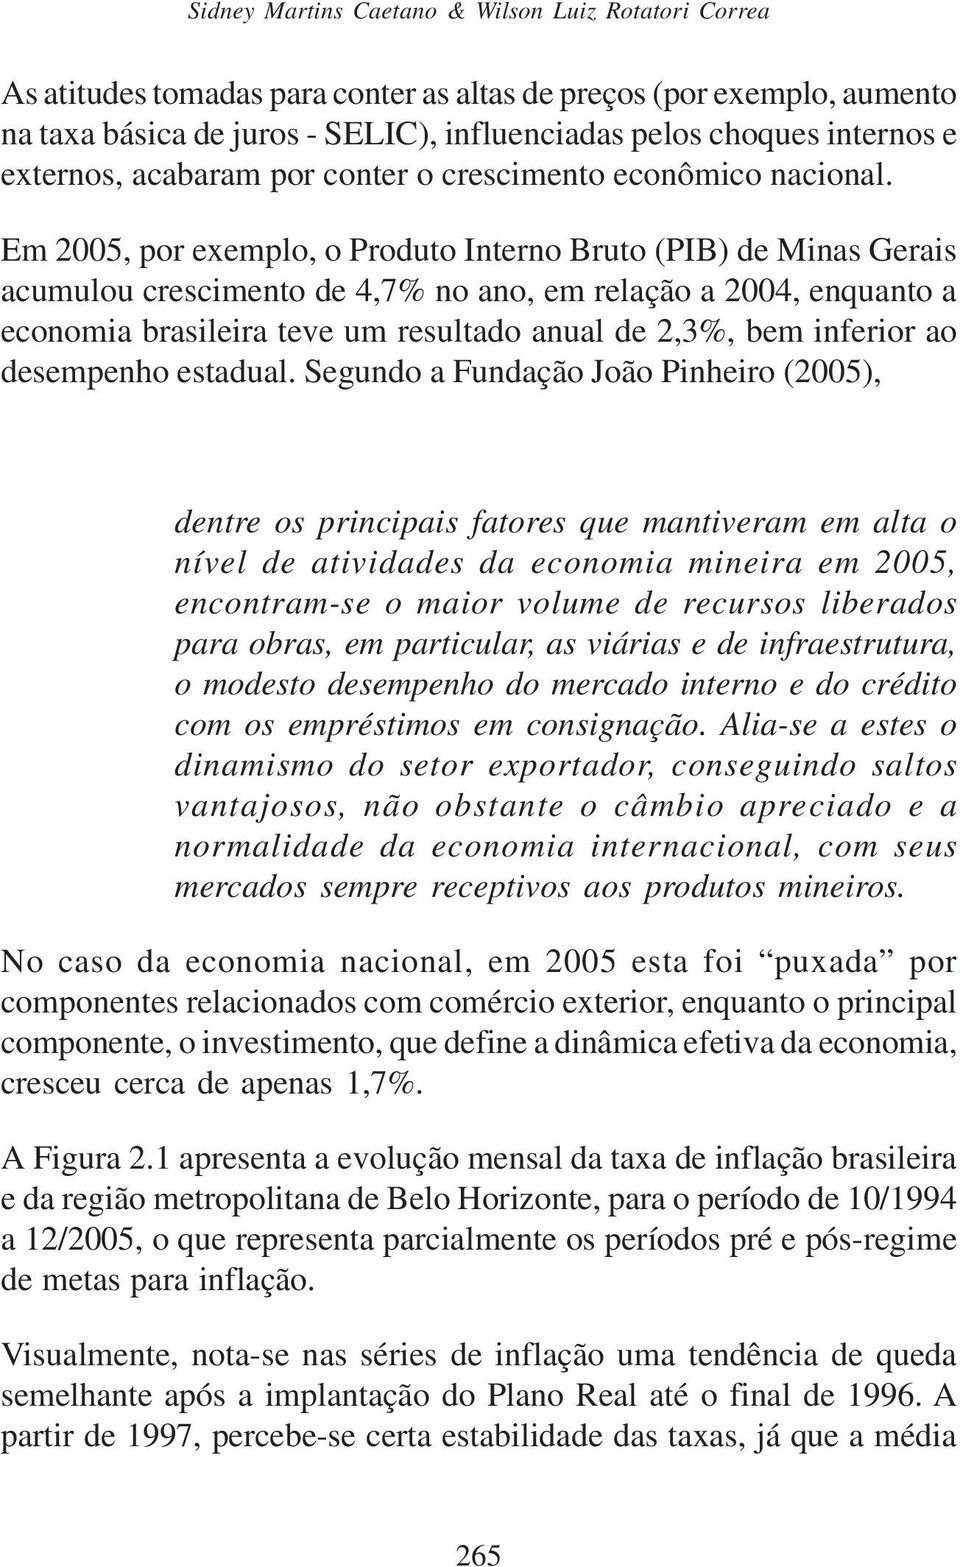 Em 2005, por exemplo, o Produto Interno Bruto (PIB) de Minas Gerais acumulou crescimento de 4,7% no ano, em relação a 2004, enquanto a economia brasileira teve um resultado anual de 2,3%, bem